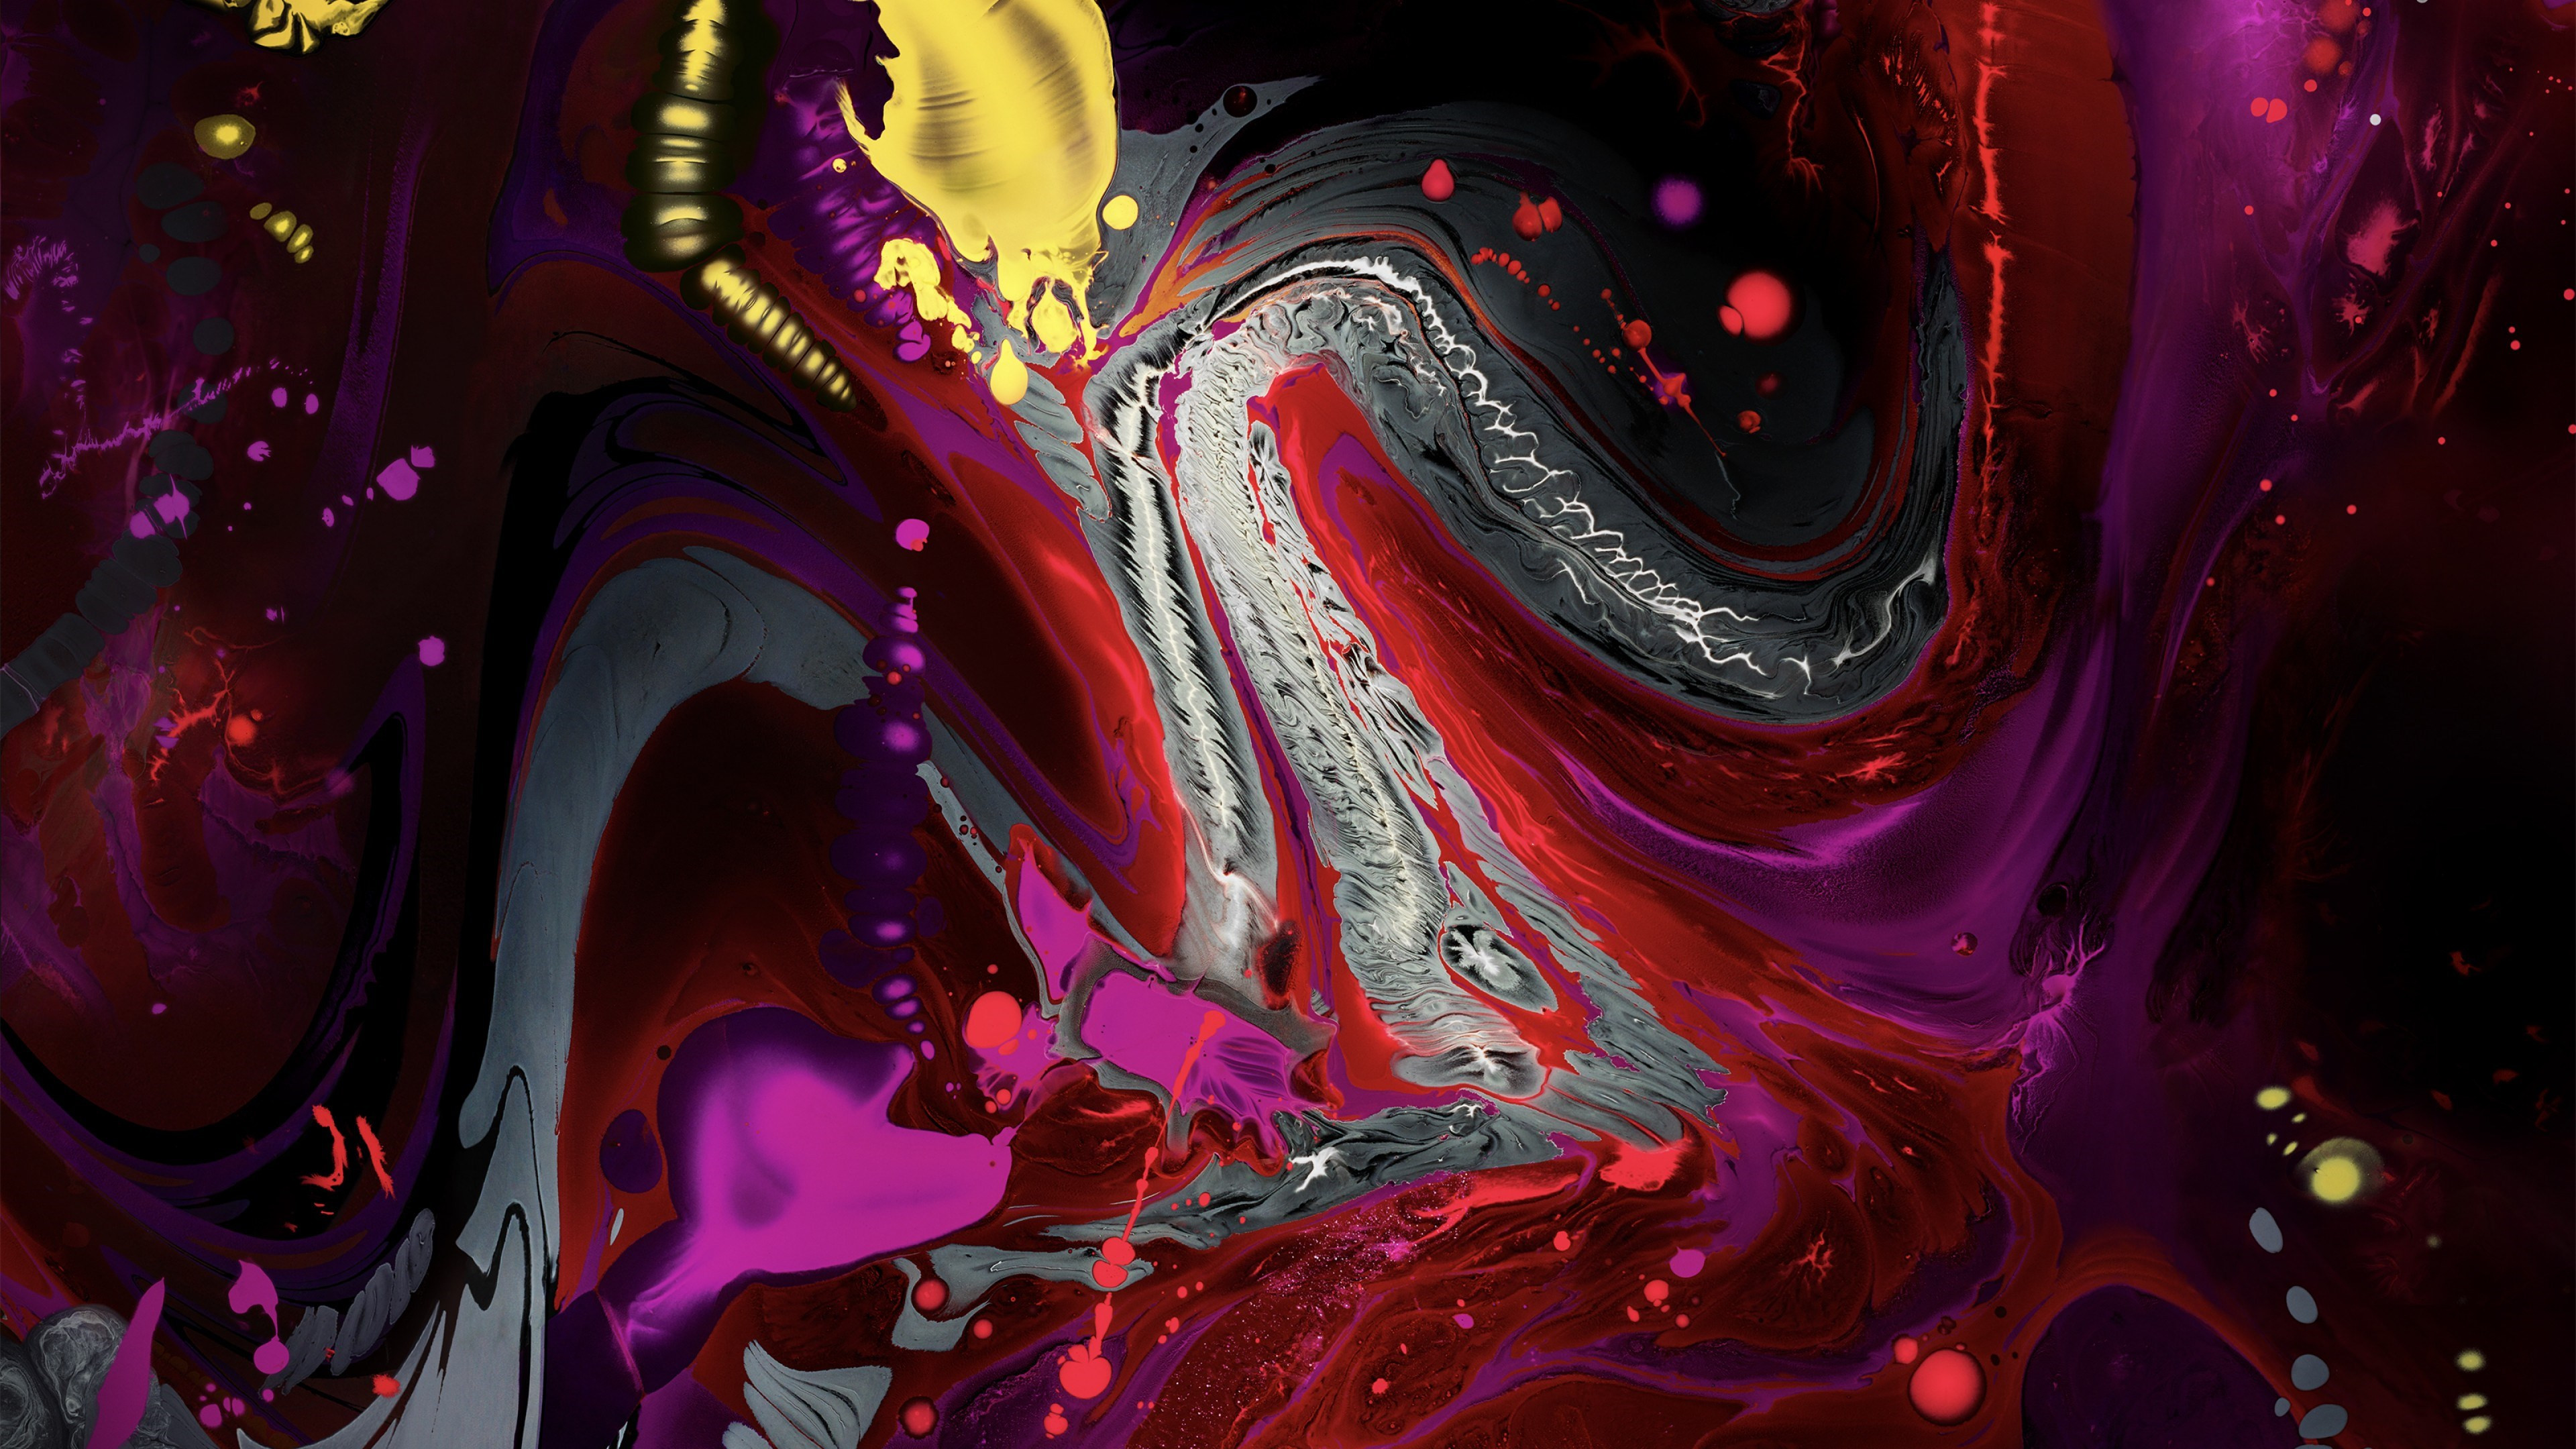 Liquid colors from iPad 2018 wallpaper 3840x2160